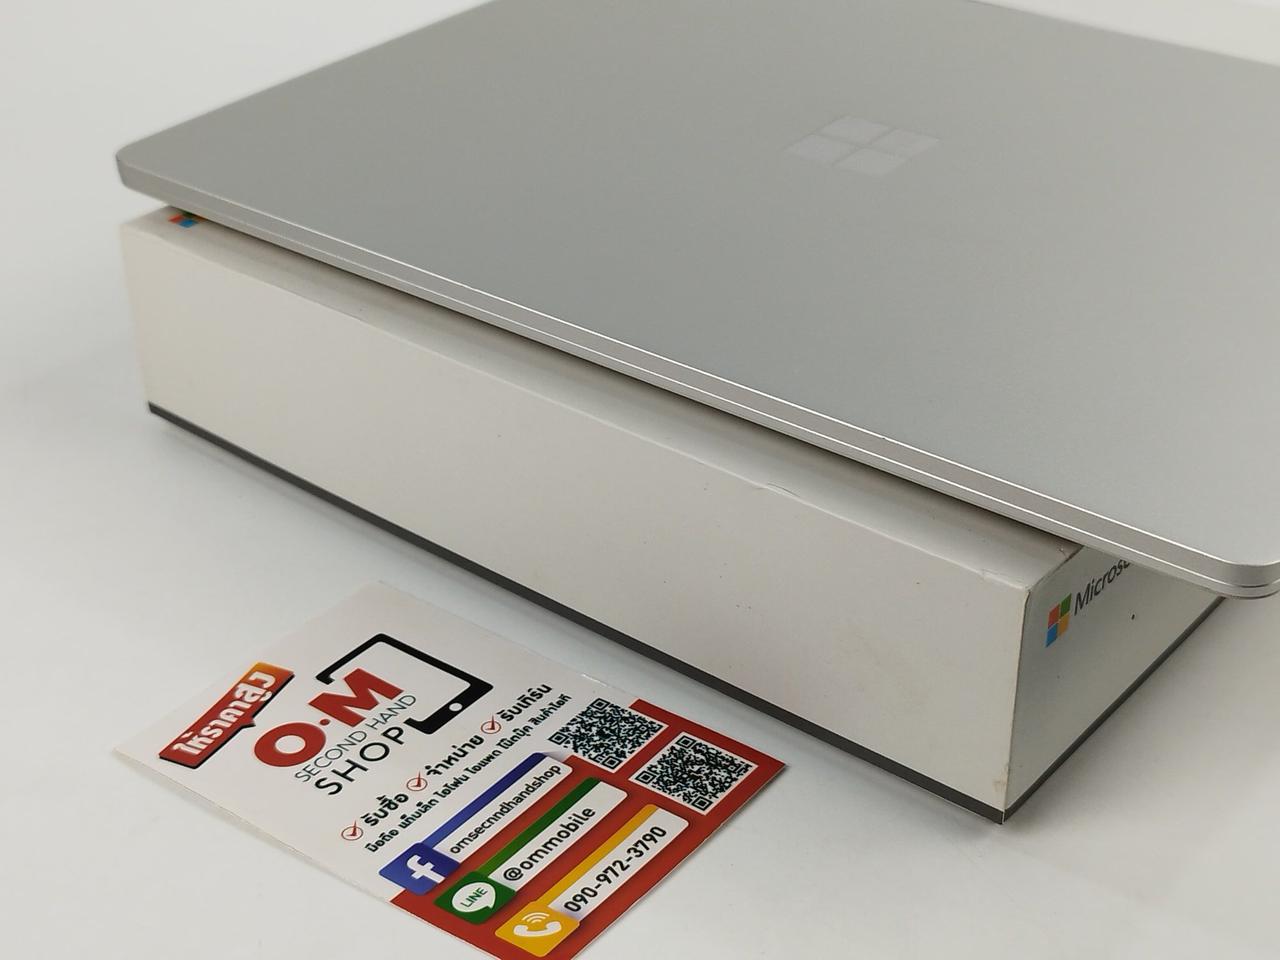 ขาย/แลก Microsoft Surface Laptop Go i5-1035G1 4/64 จอ Touchscreen ศูนย์ไทย สวยมาก ครบกล่อง เพียง 12,900 บาท  รูปที่ 5